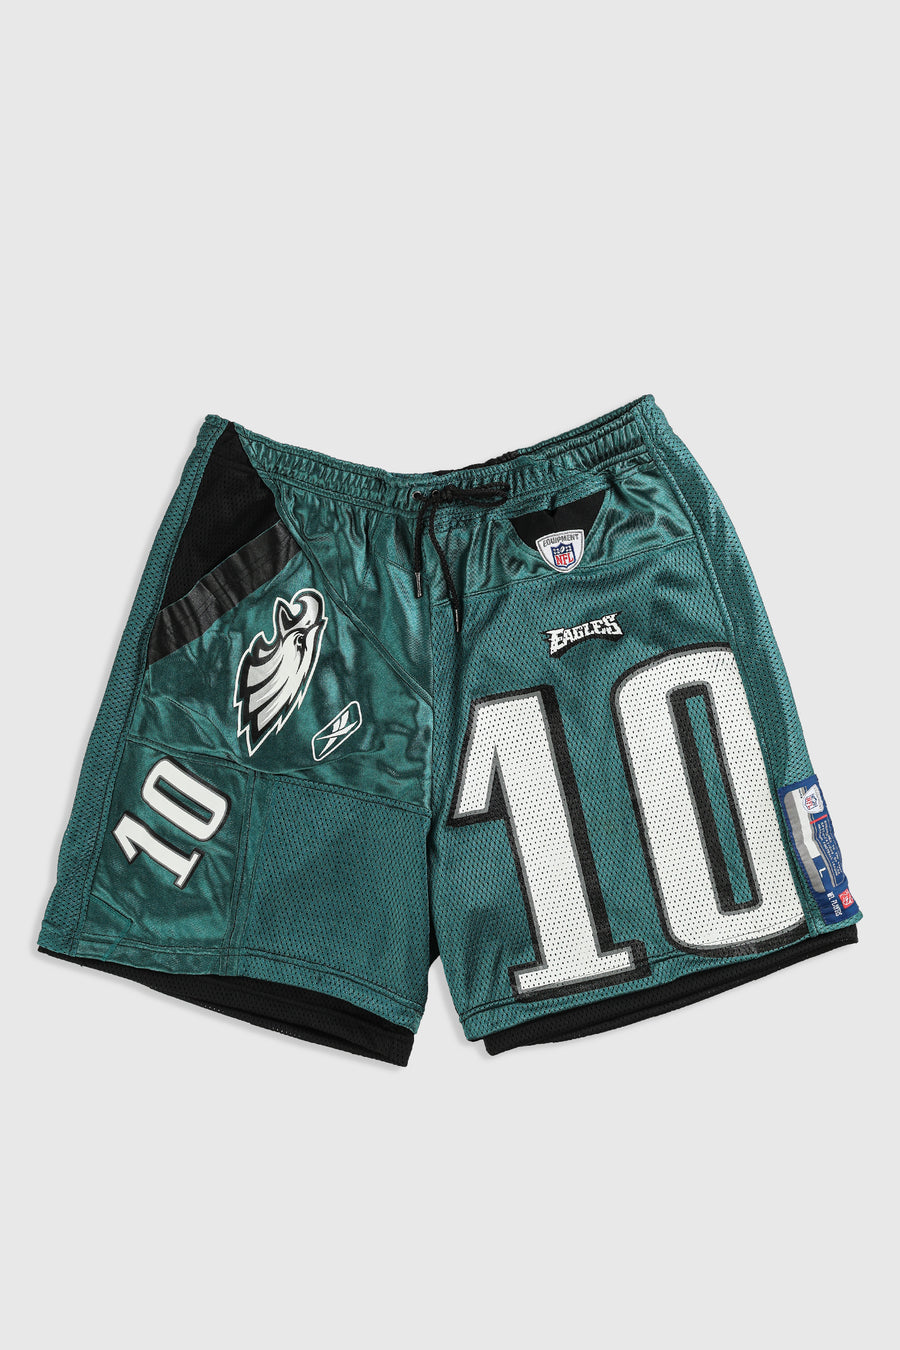 Unisex Rework Eagles NFL Jersey Shorts - 2XL